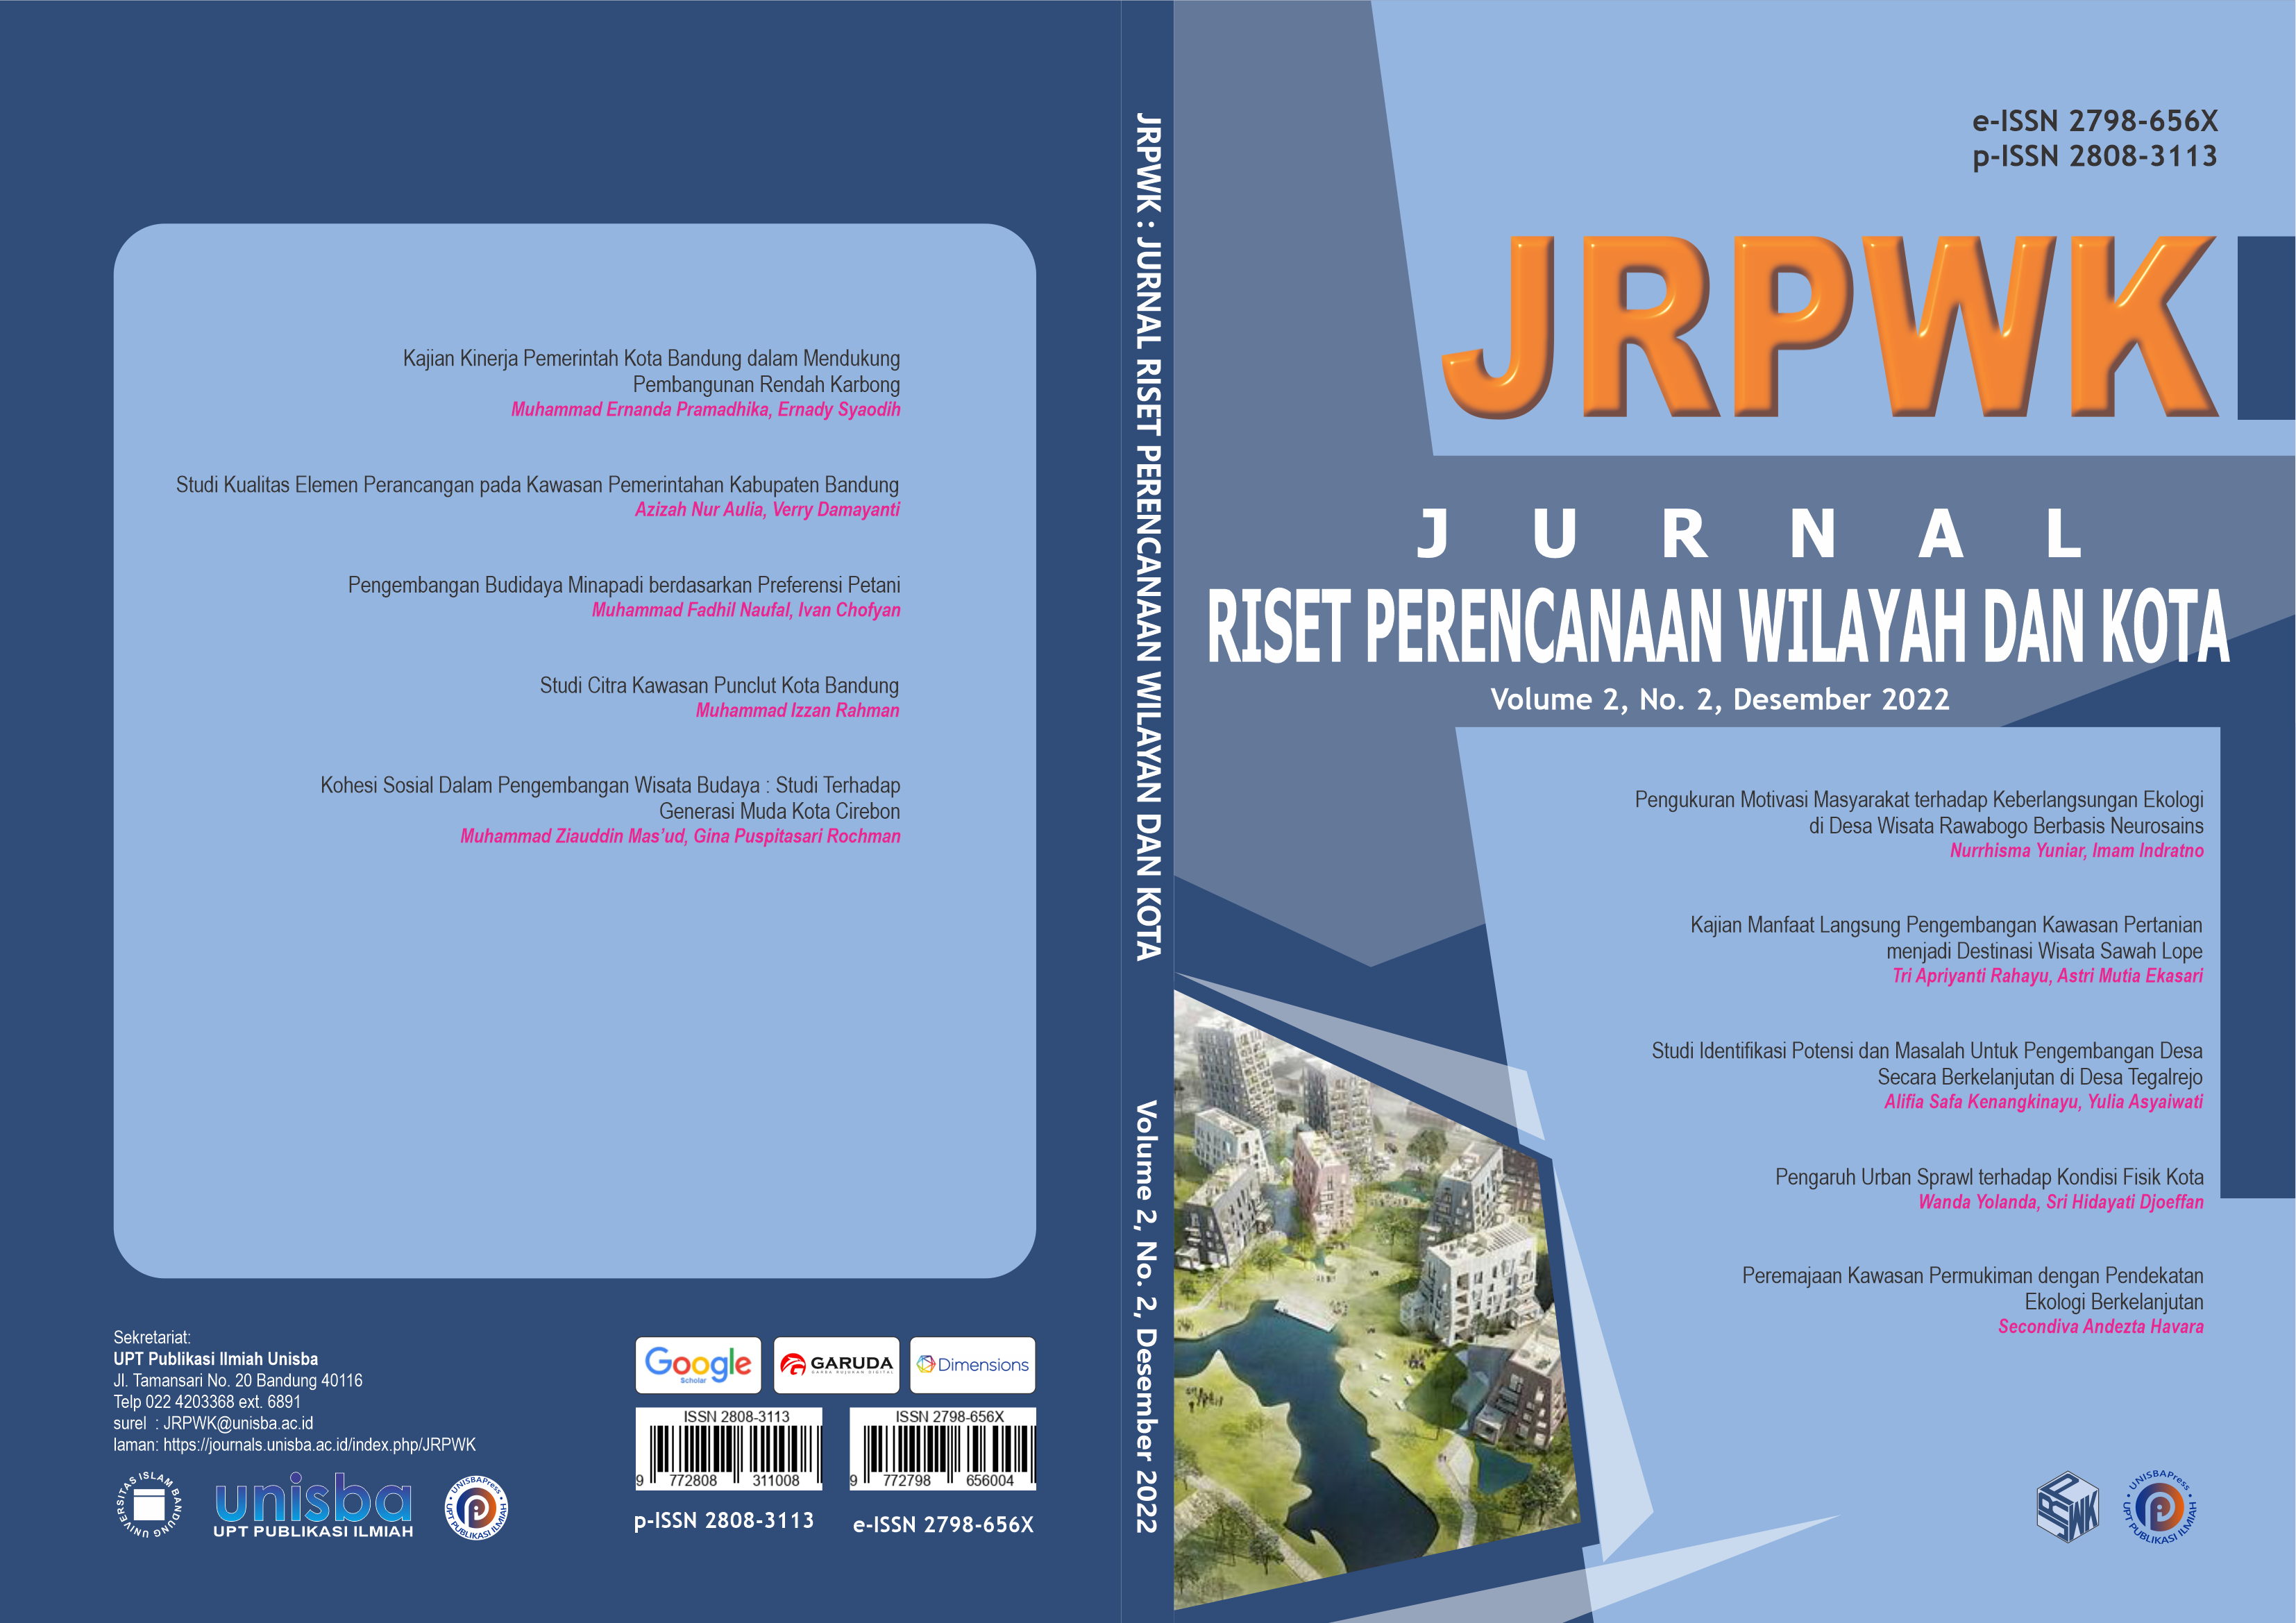 					View Volume 2, No. 2, Desember 2022, Jurnal Riset Perencanaan Wilayah dan Kota (JRPWK)
				